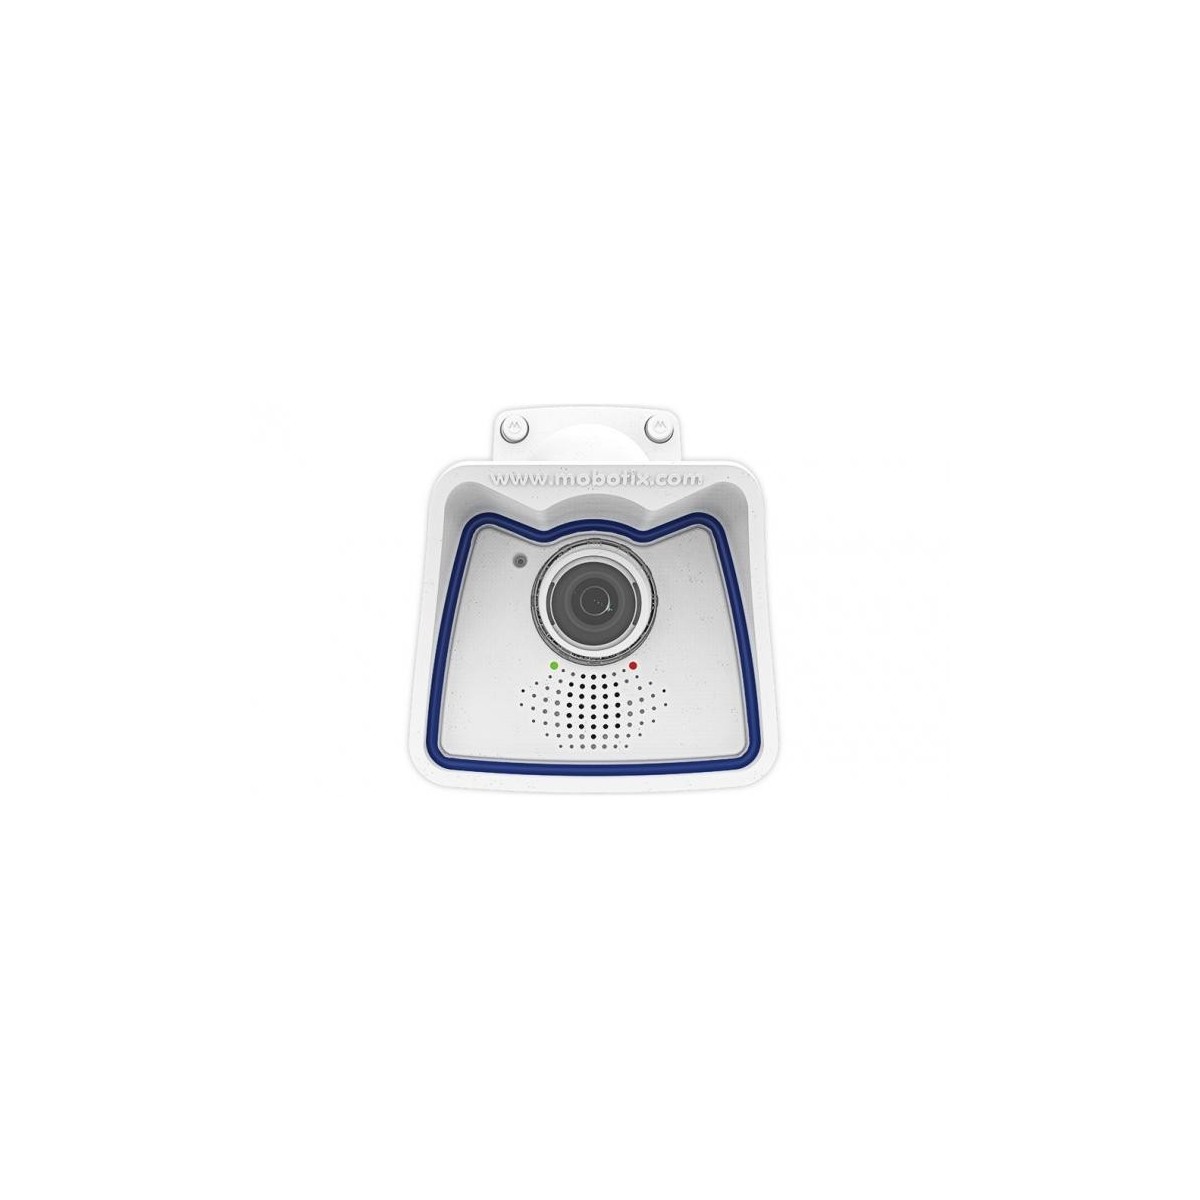 Mobotix M26B - IP security camera - Indoor & outdoor - Wired - EN55032:2012 EN55022:2010; EN55024:2010; EN50121-4:2015 EN61000-6